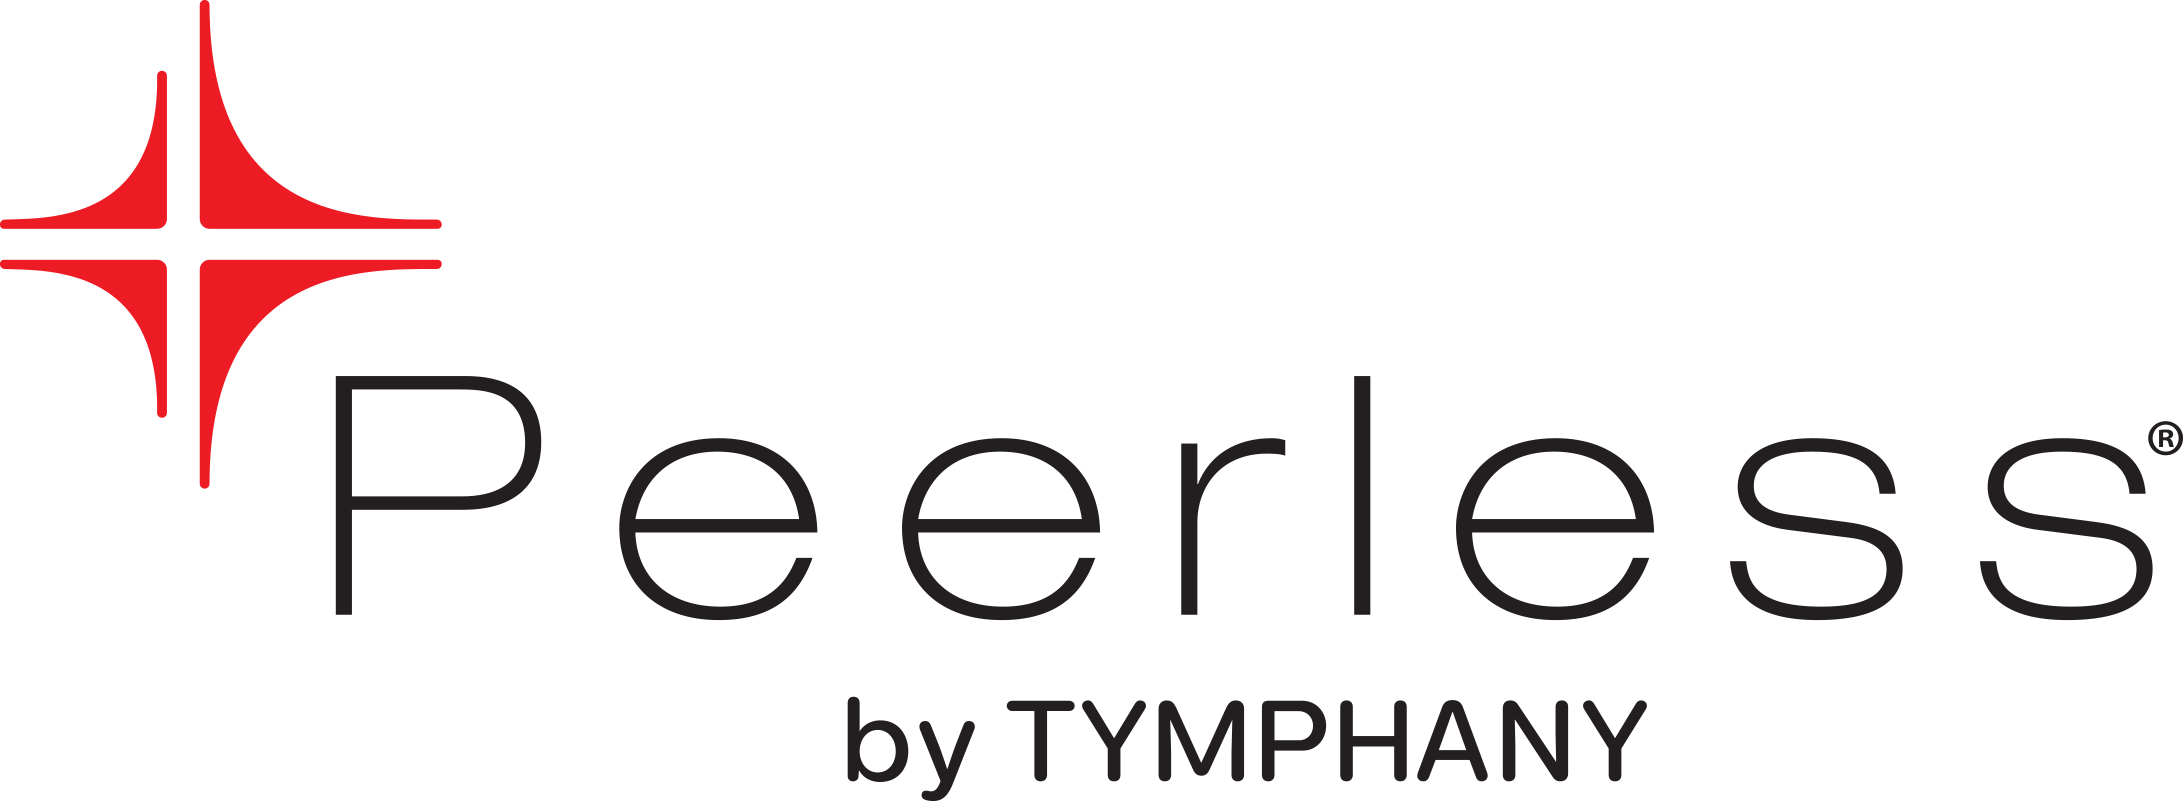 Vifa (Peerless by Tymphany)